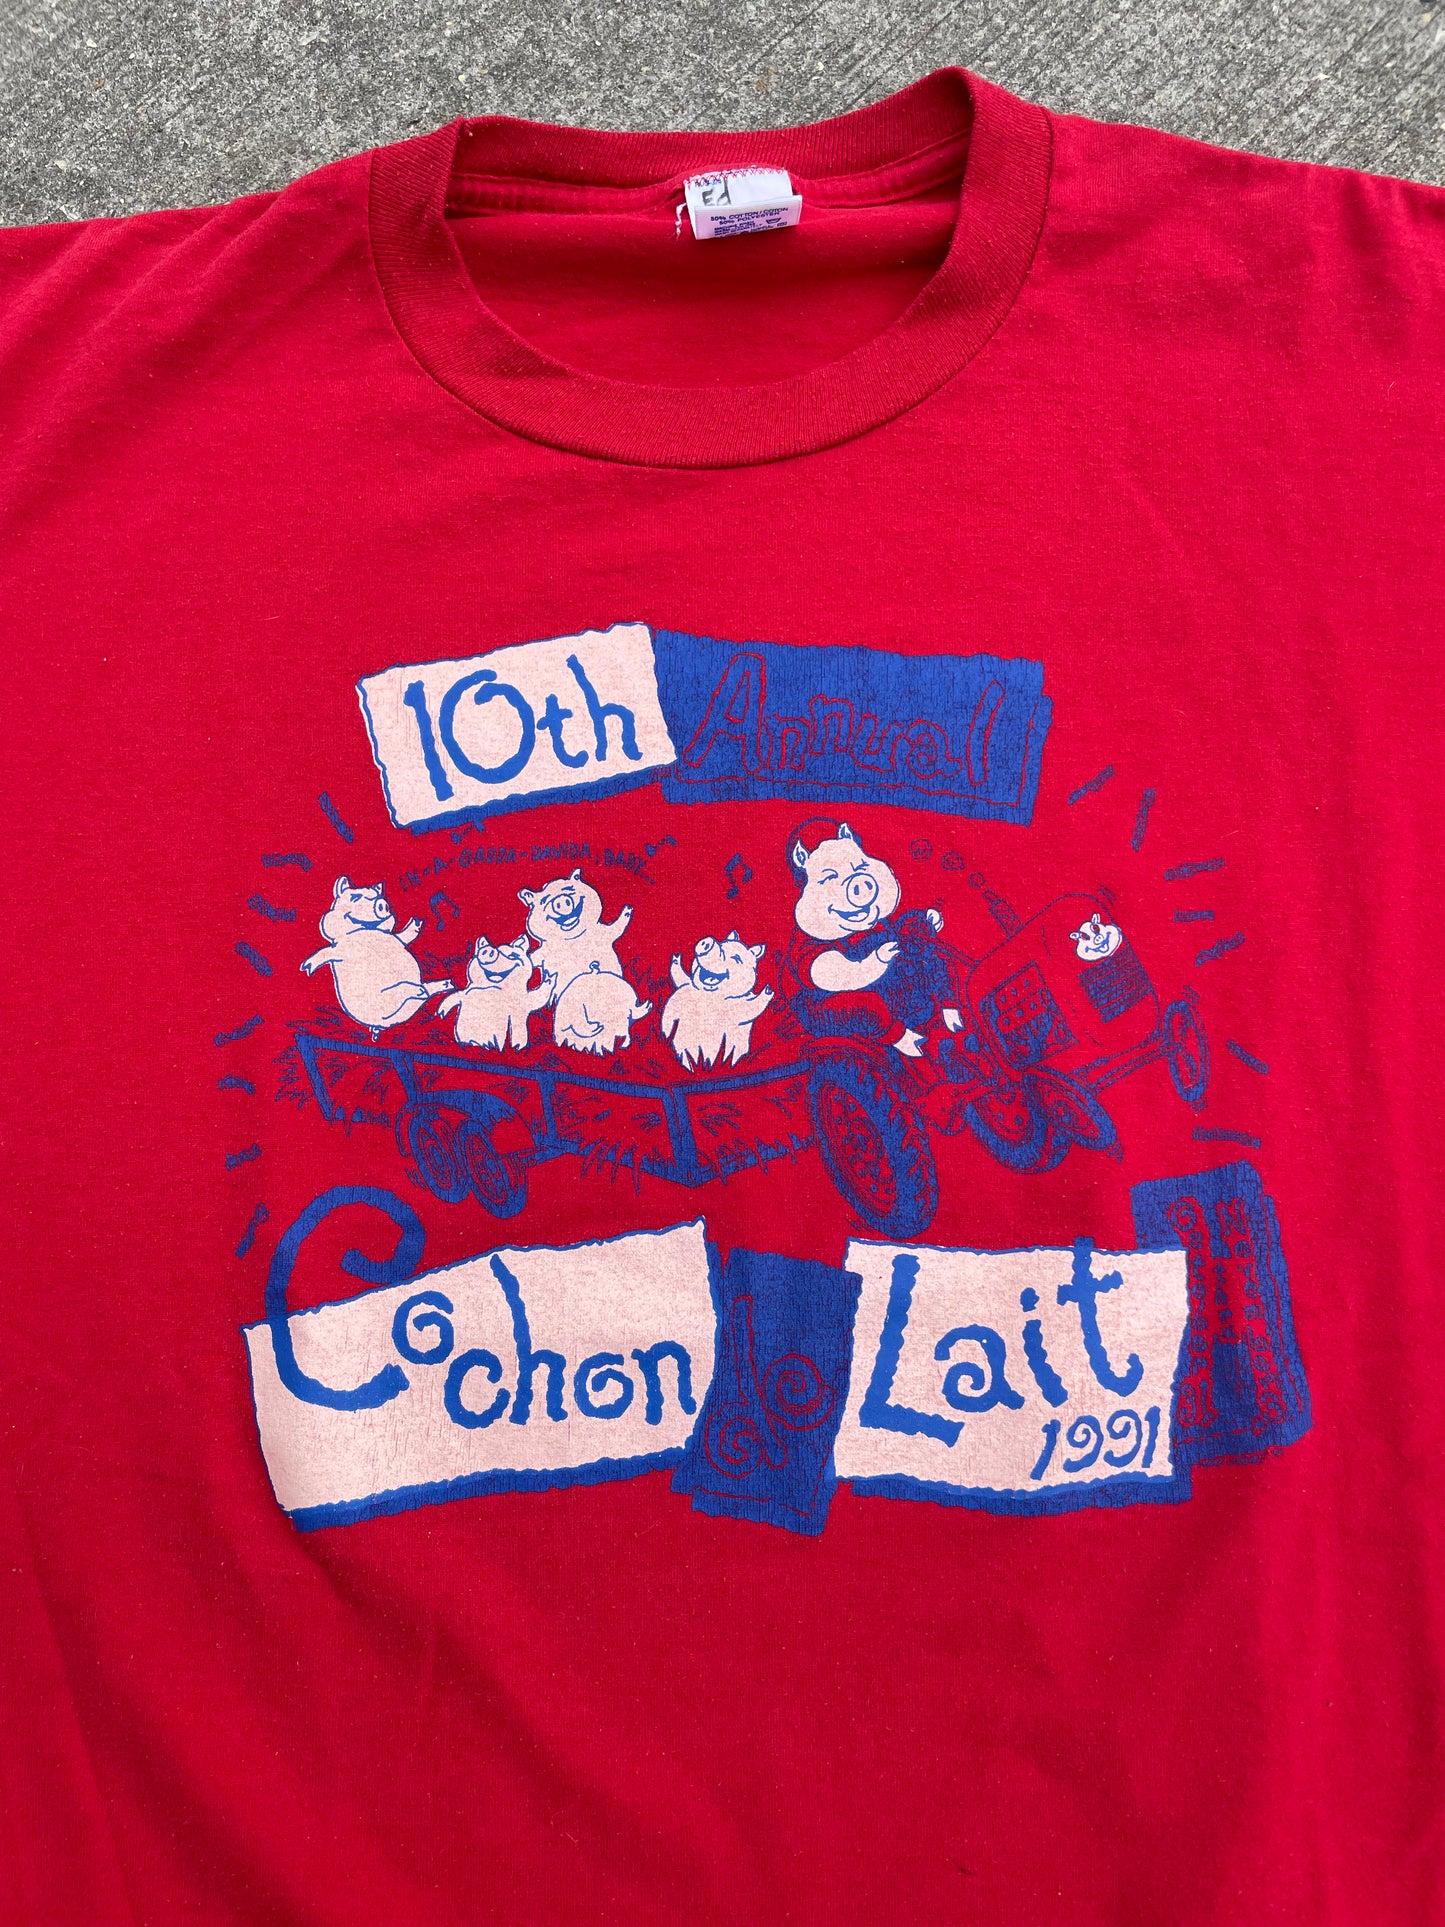 Cochon de Lait 1991 (Large)